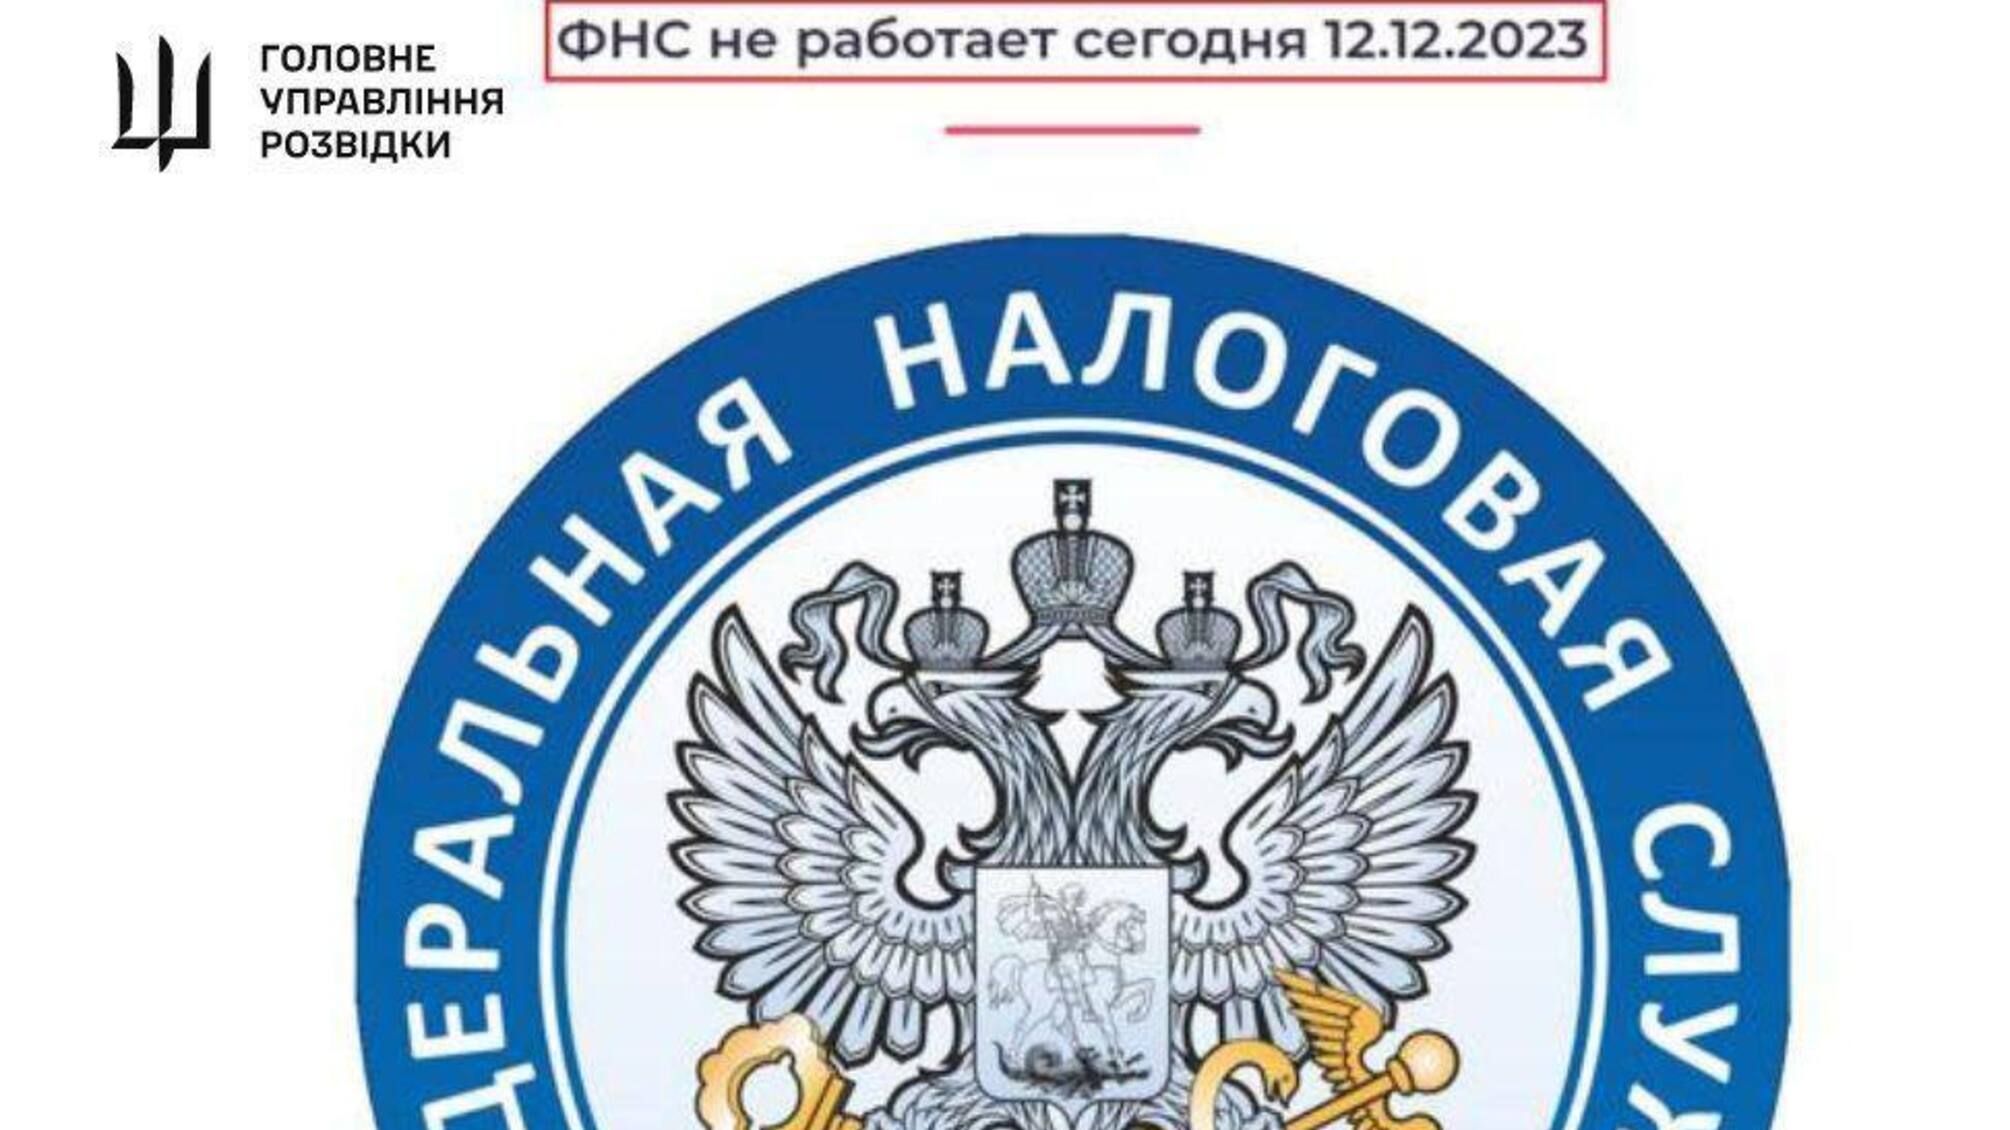 Кіберпідрозділи ГУР здійснили успішну спецоперацію на території росії